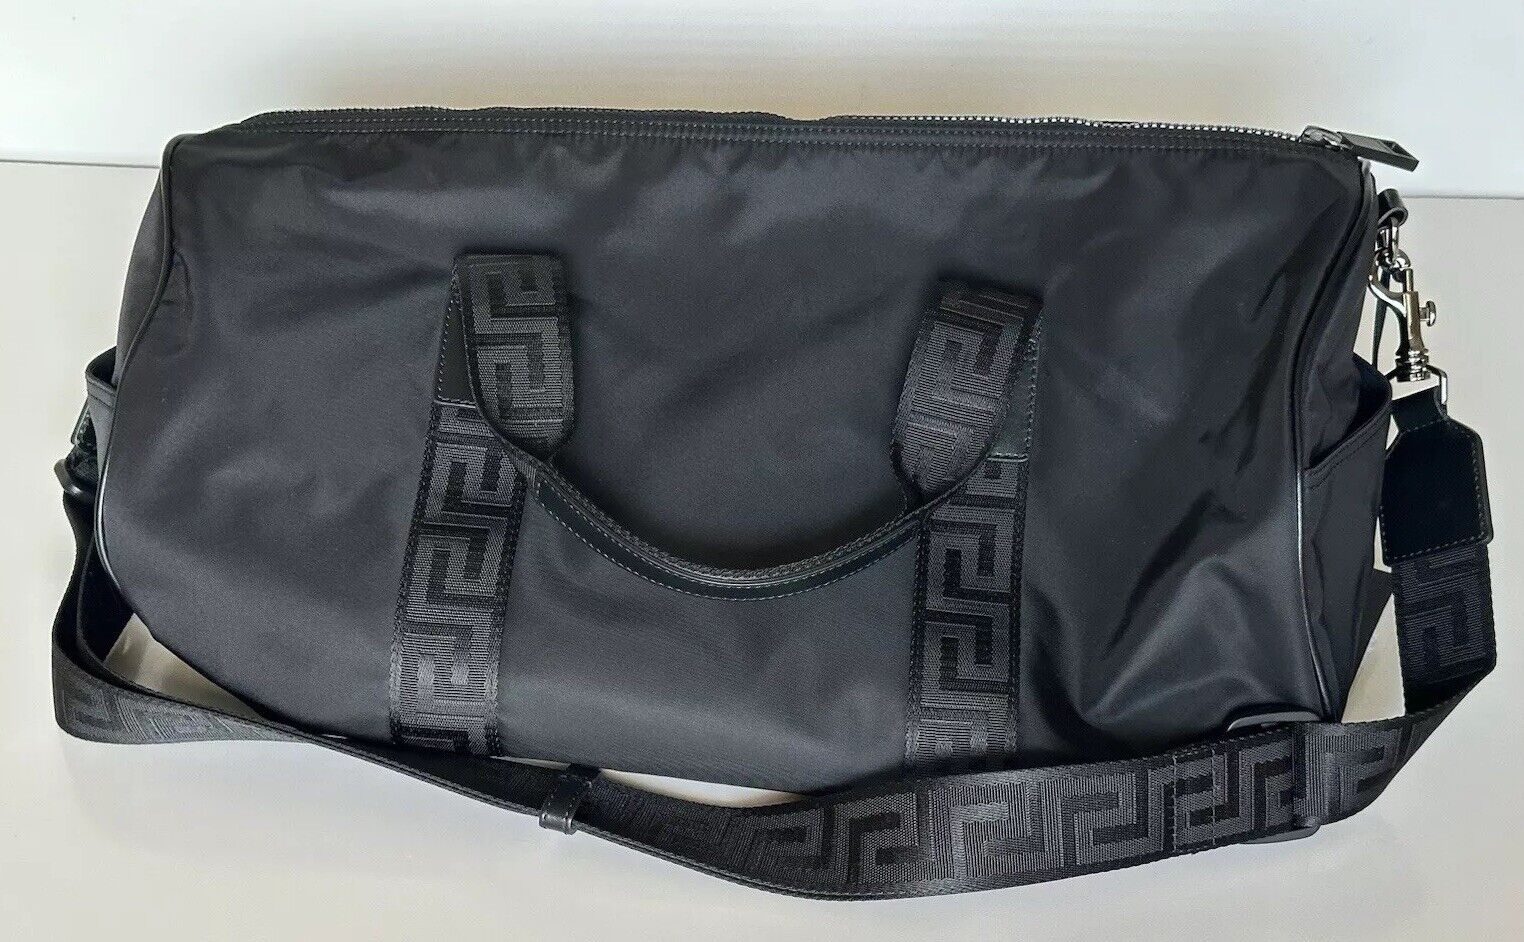 Versace Medusa Head & Greca Key Nylon Duffle Bag Made in Italy 1014313 NWT $1400